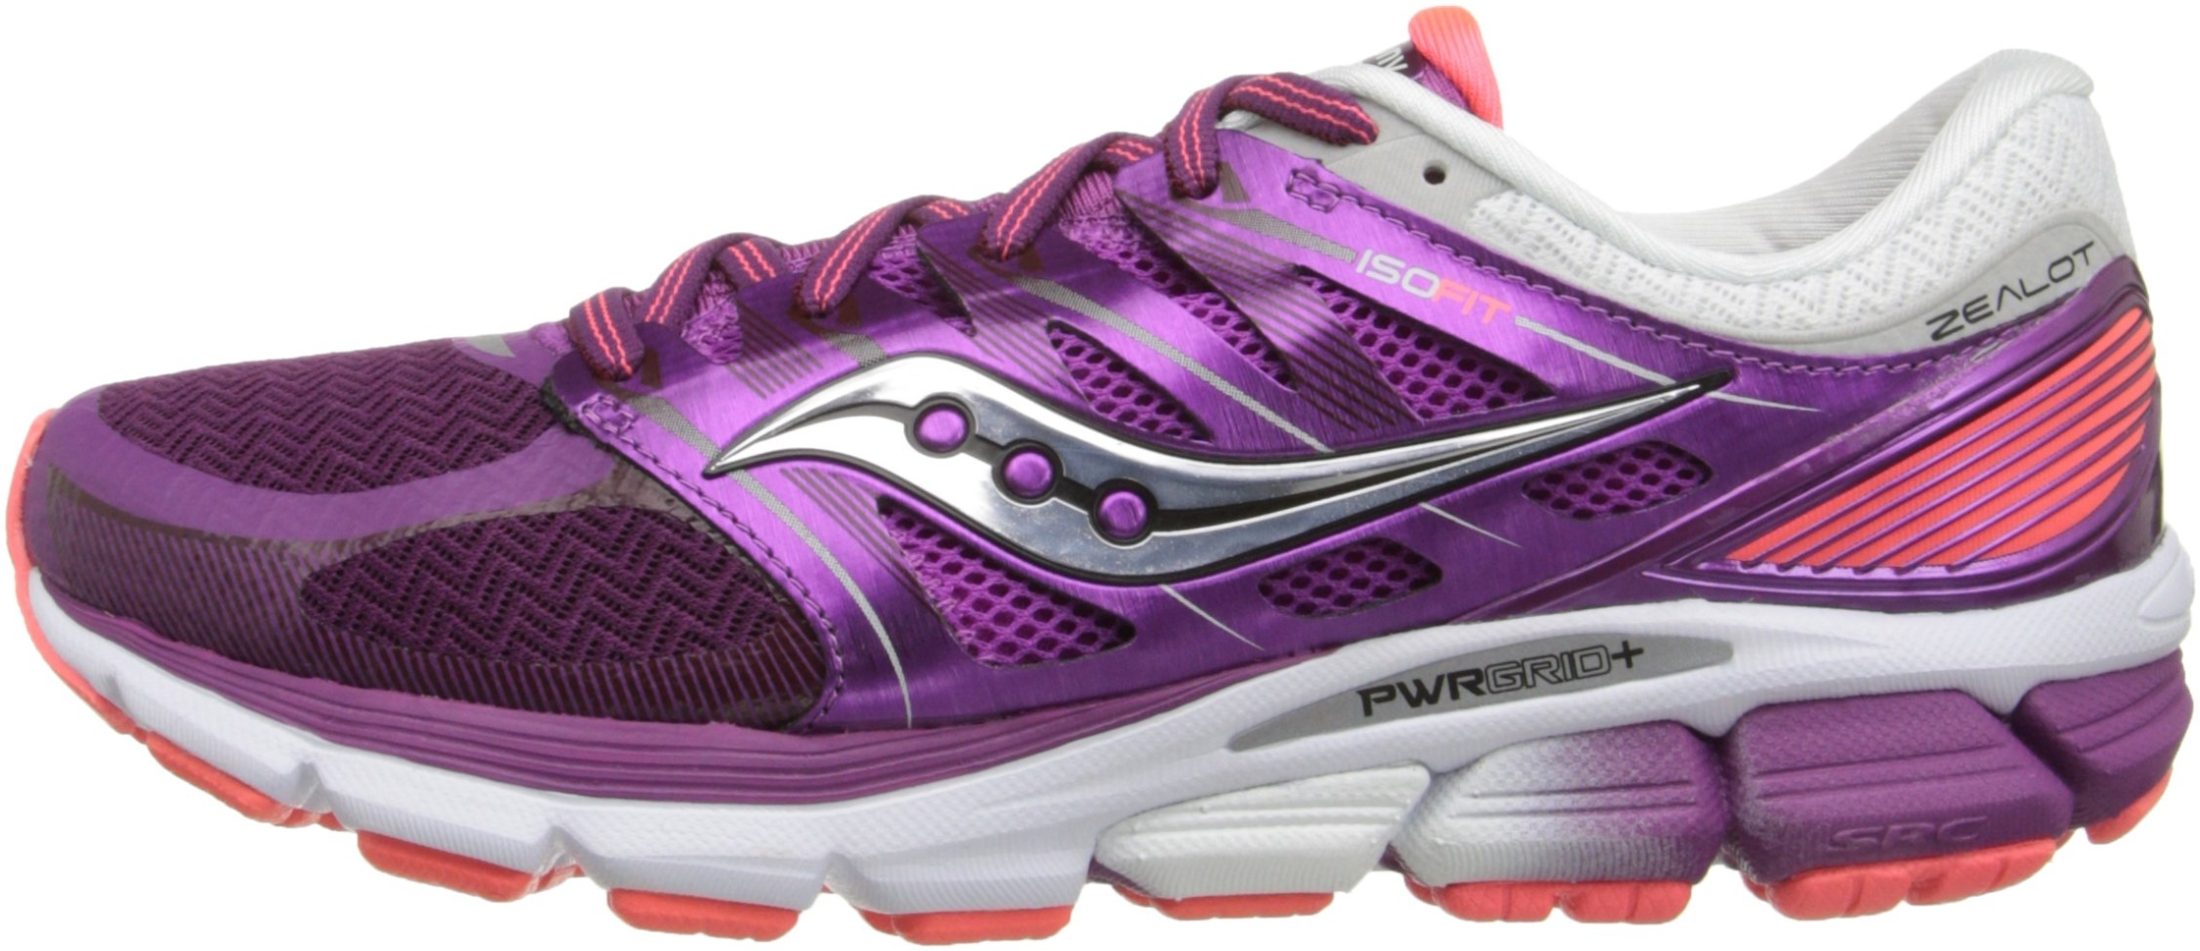 saucony zealot iso women's running shoe